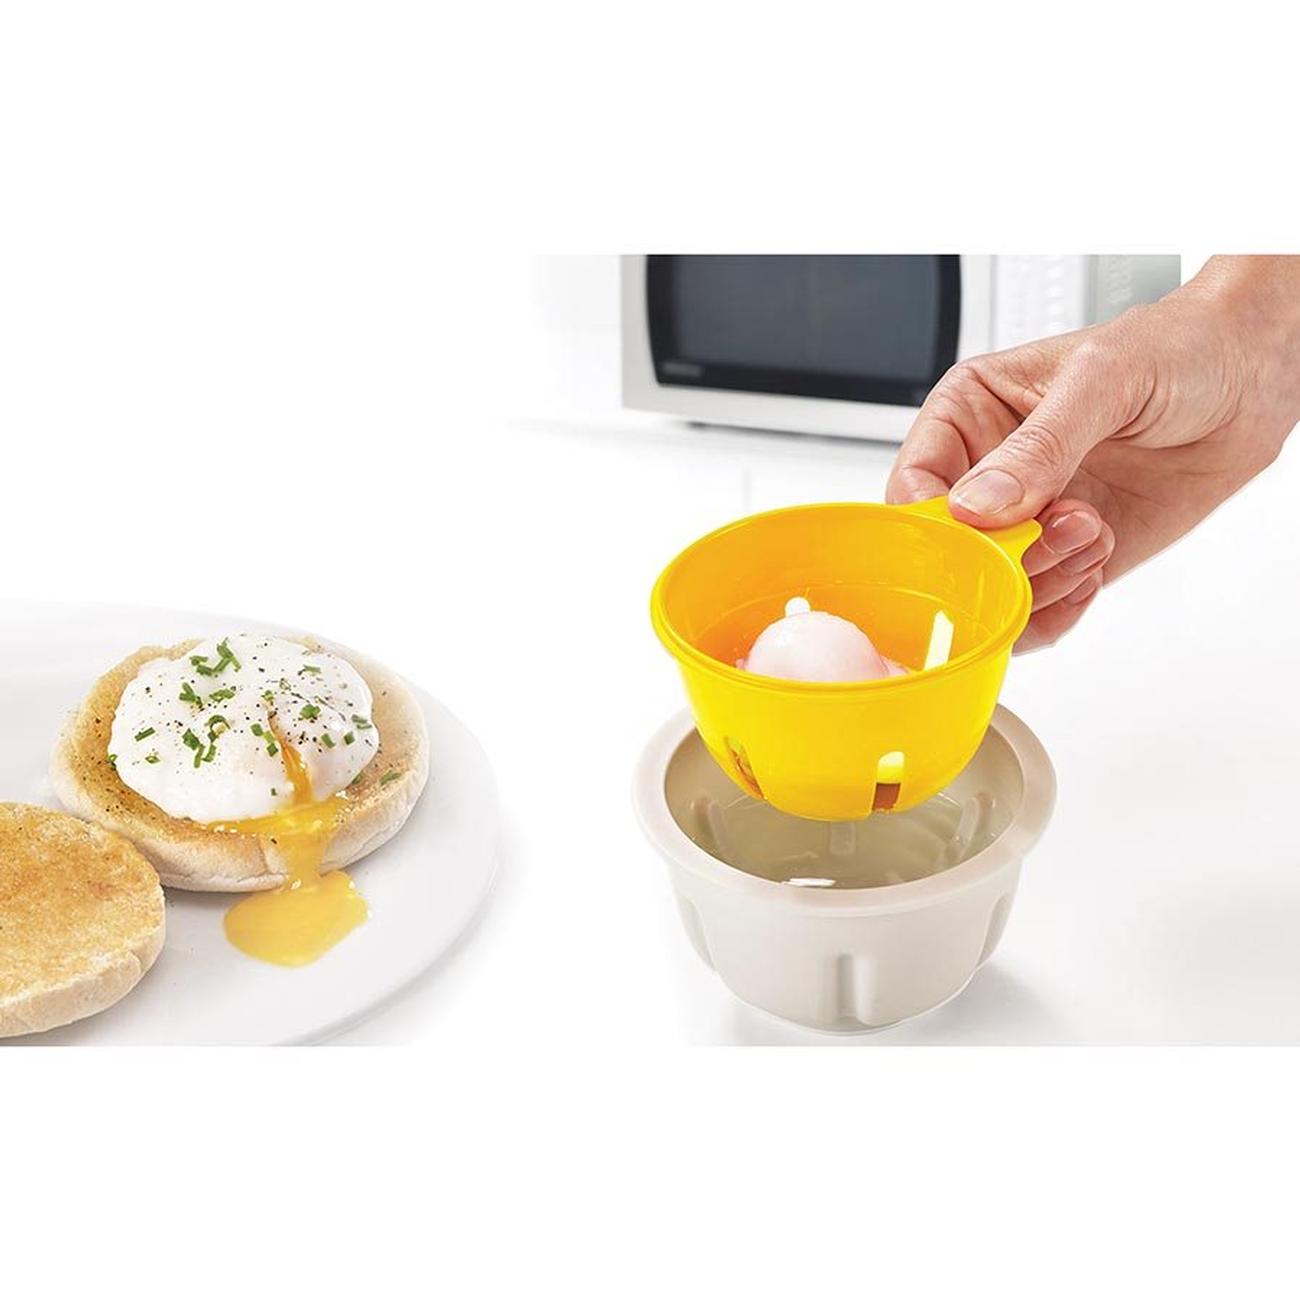 Joseph Joseph M-Cuisine Microwave Omelet Bowl - Orange